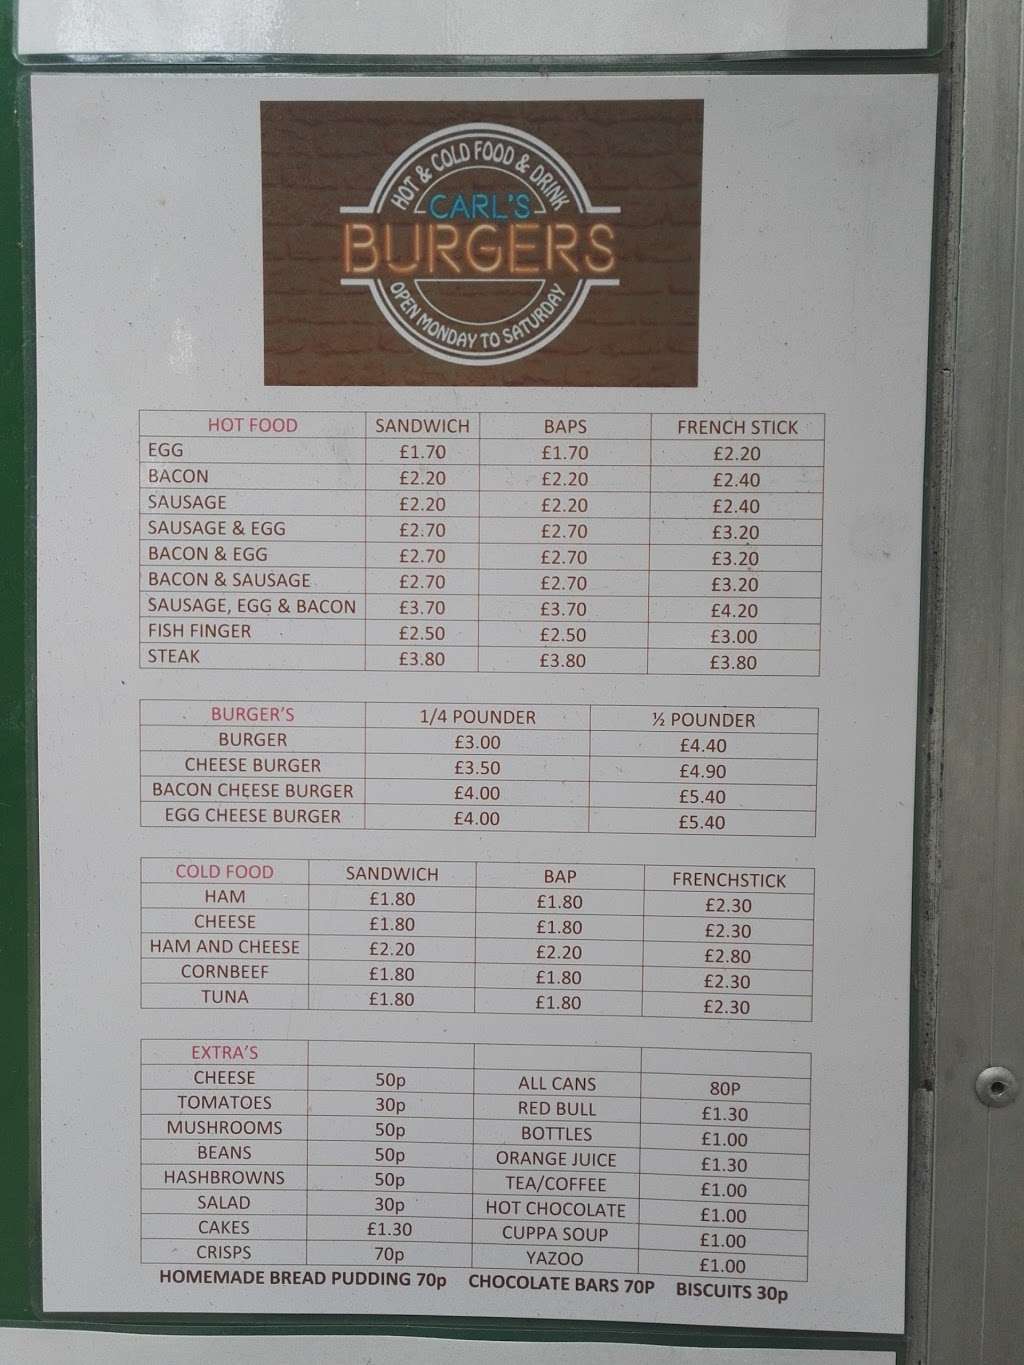 Carls Burgers | 3DT, St Albans Rd, Potters Bar EN6 3DT, UK